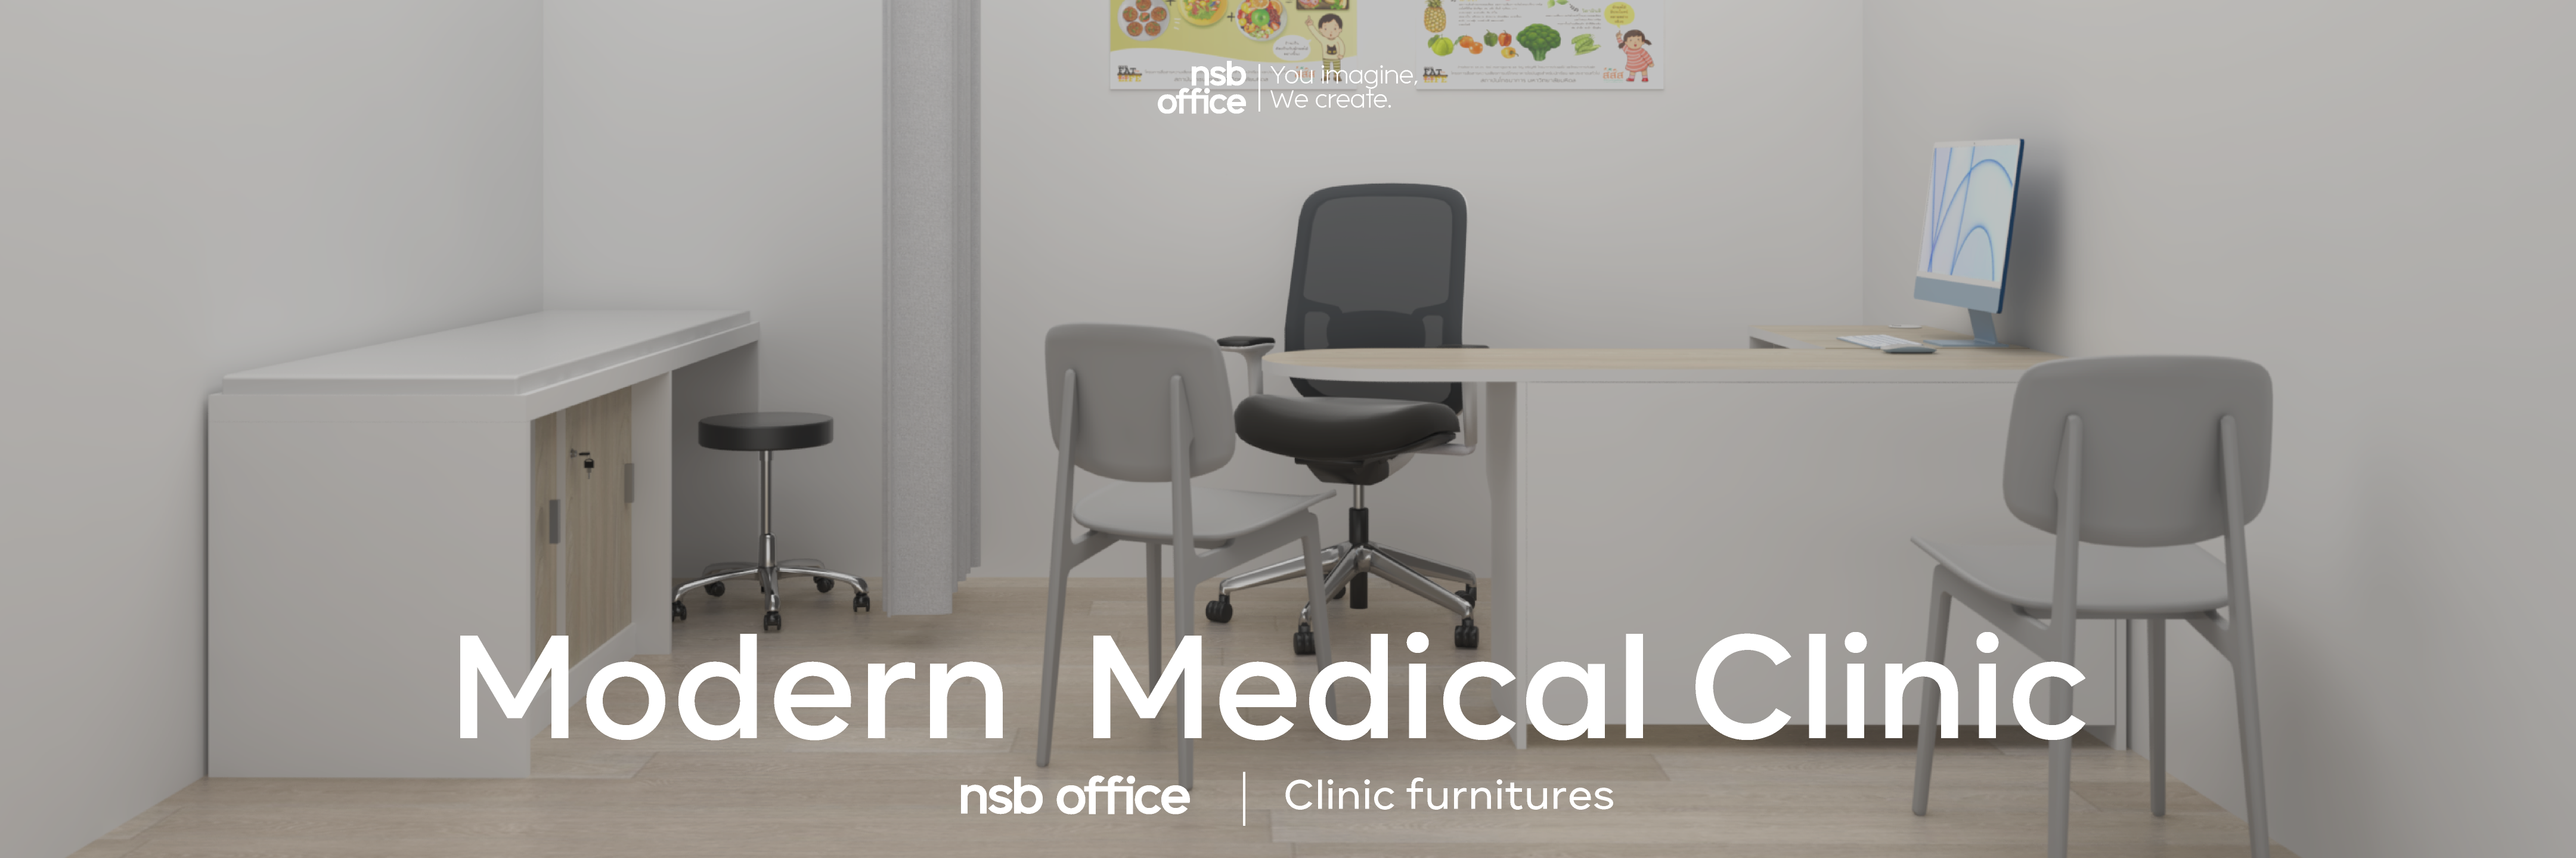 Clinic furniture | แนะนำการเลือกเฟอร์นิเจอร์ลอยตัวในคลินิก